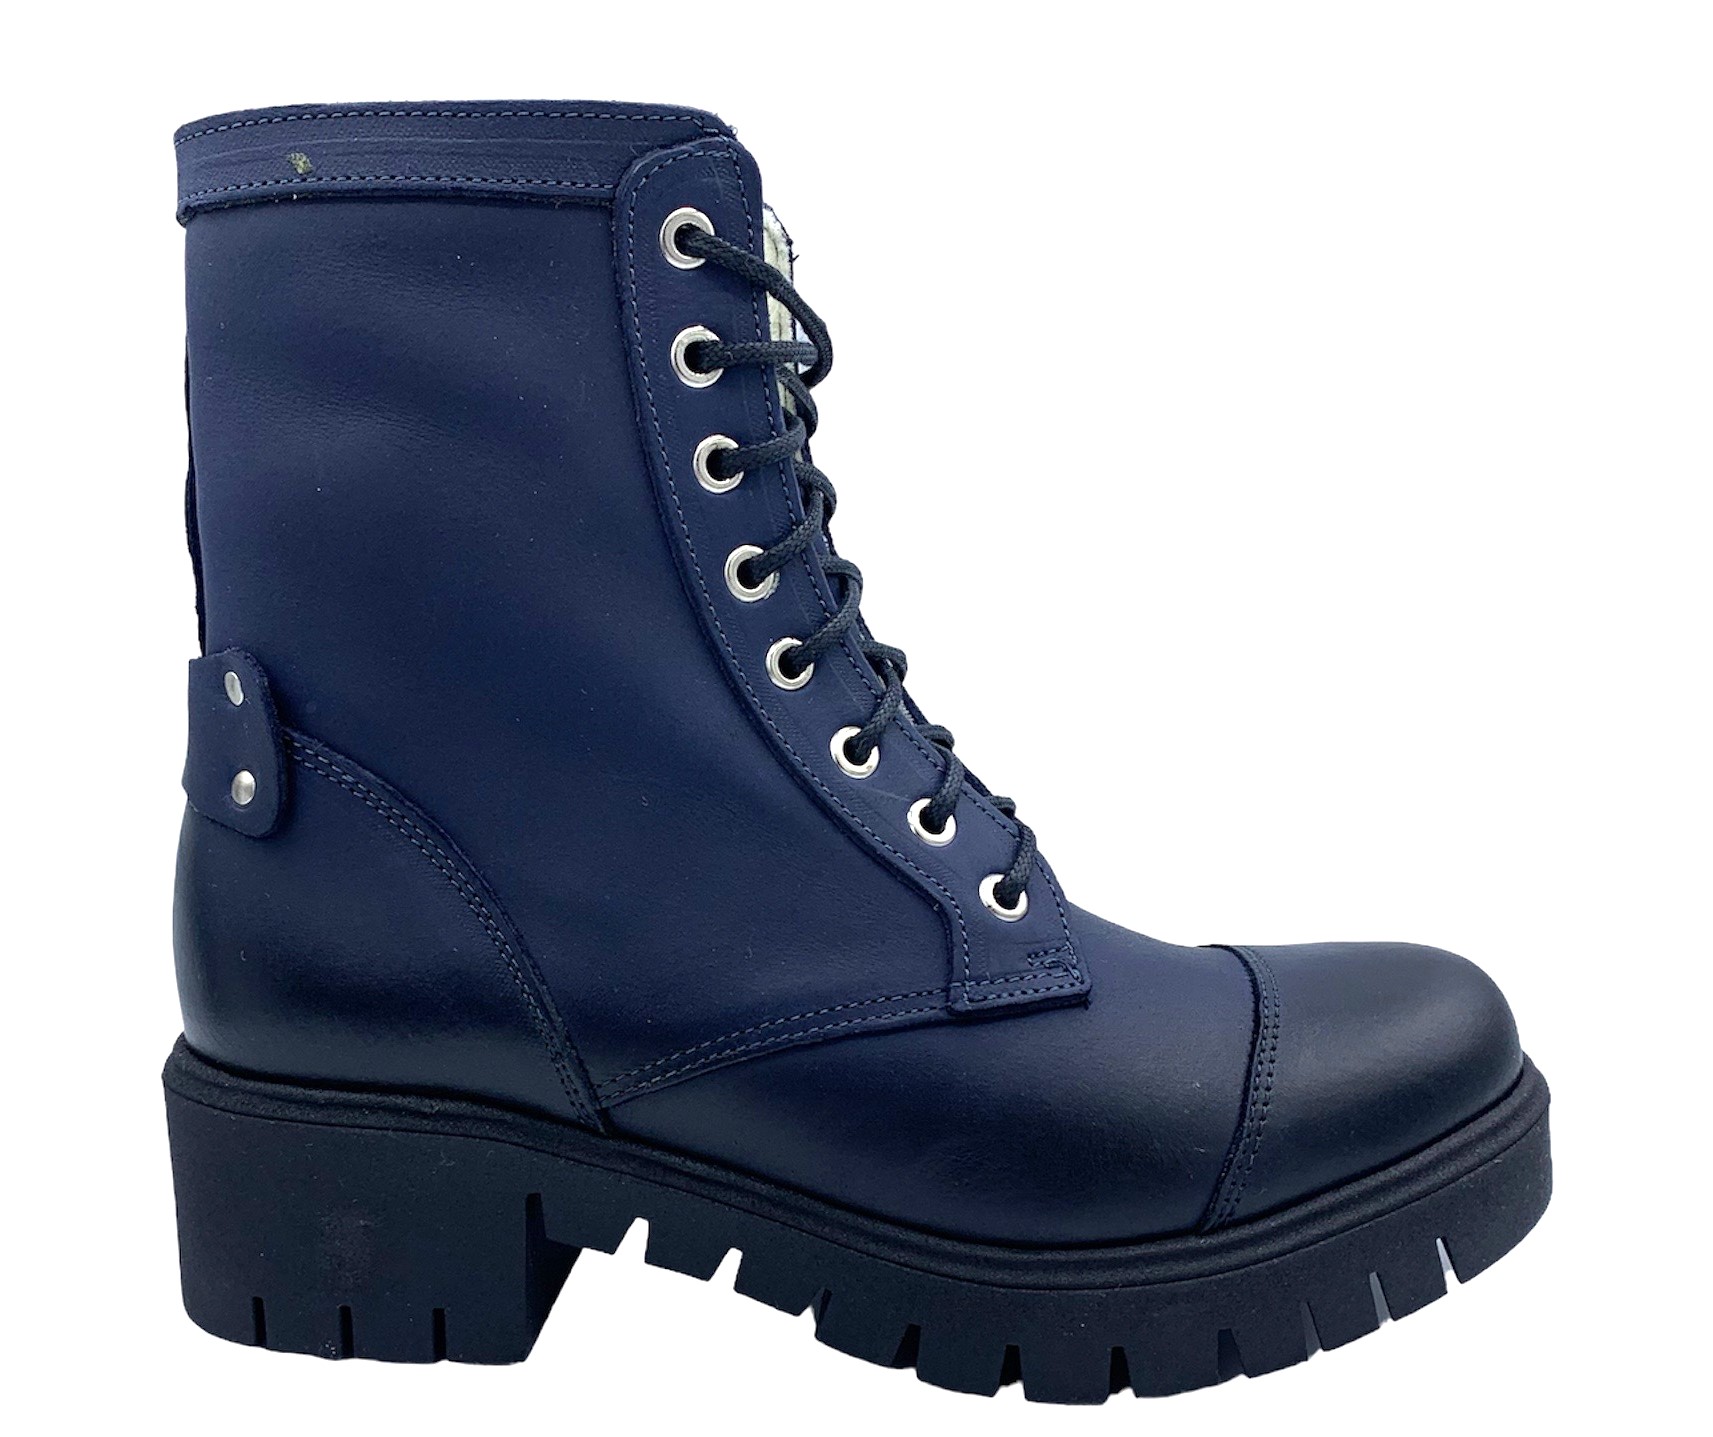 Dámská zimní obuv Hilby 1315 tm. modrá Velikost: 37 (EU)